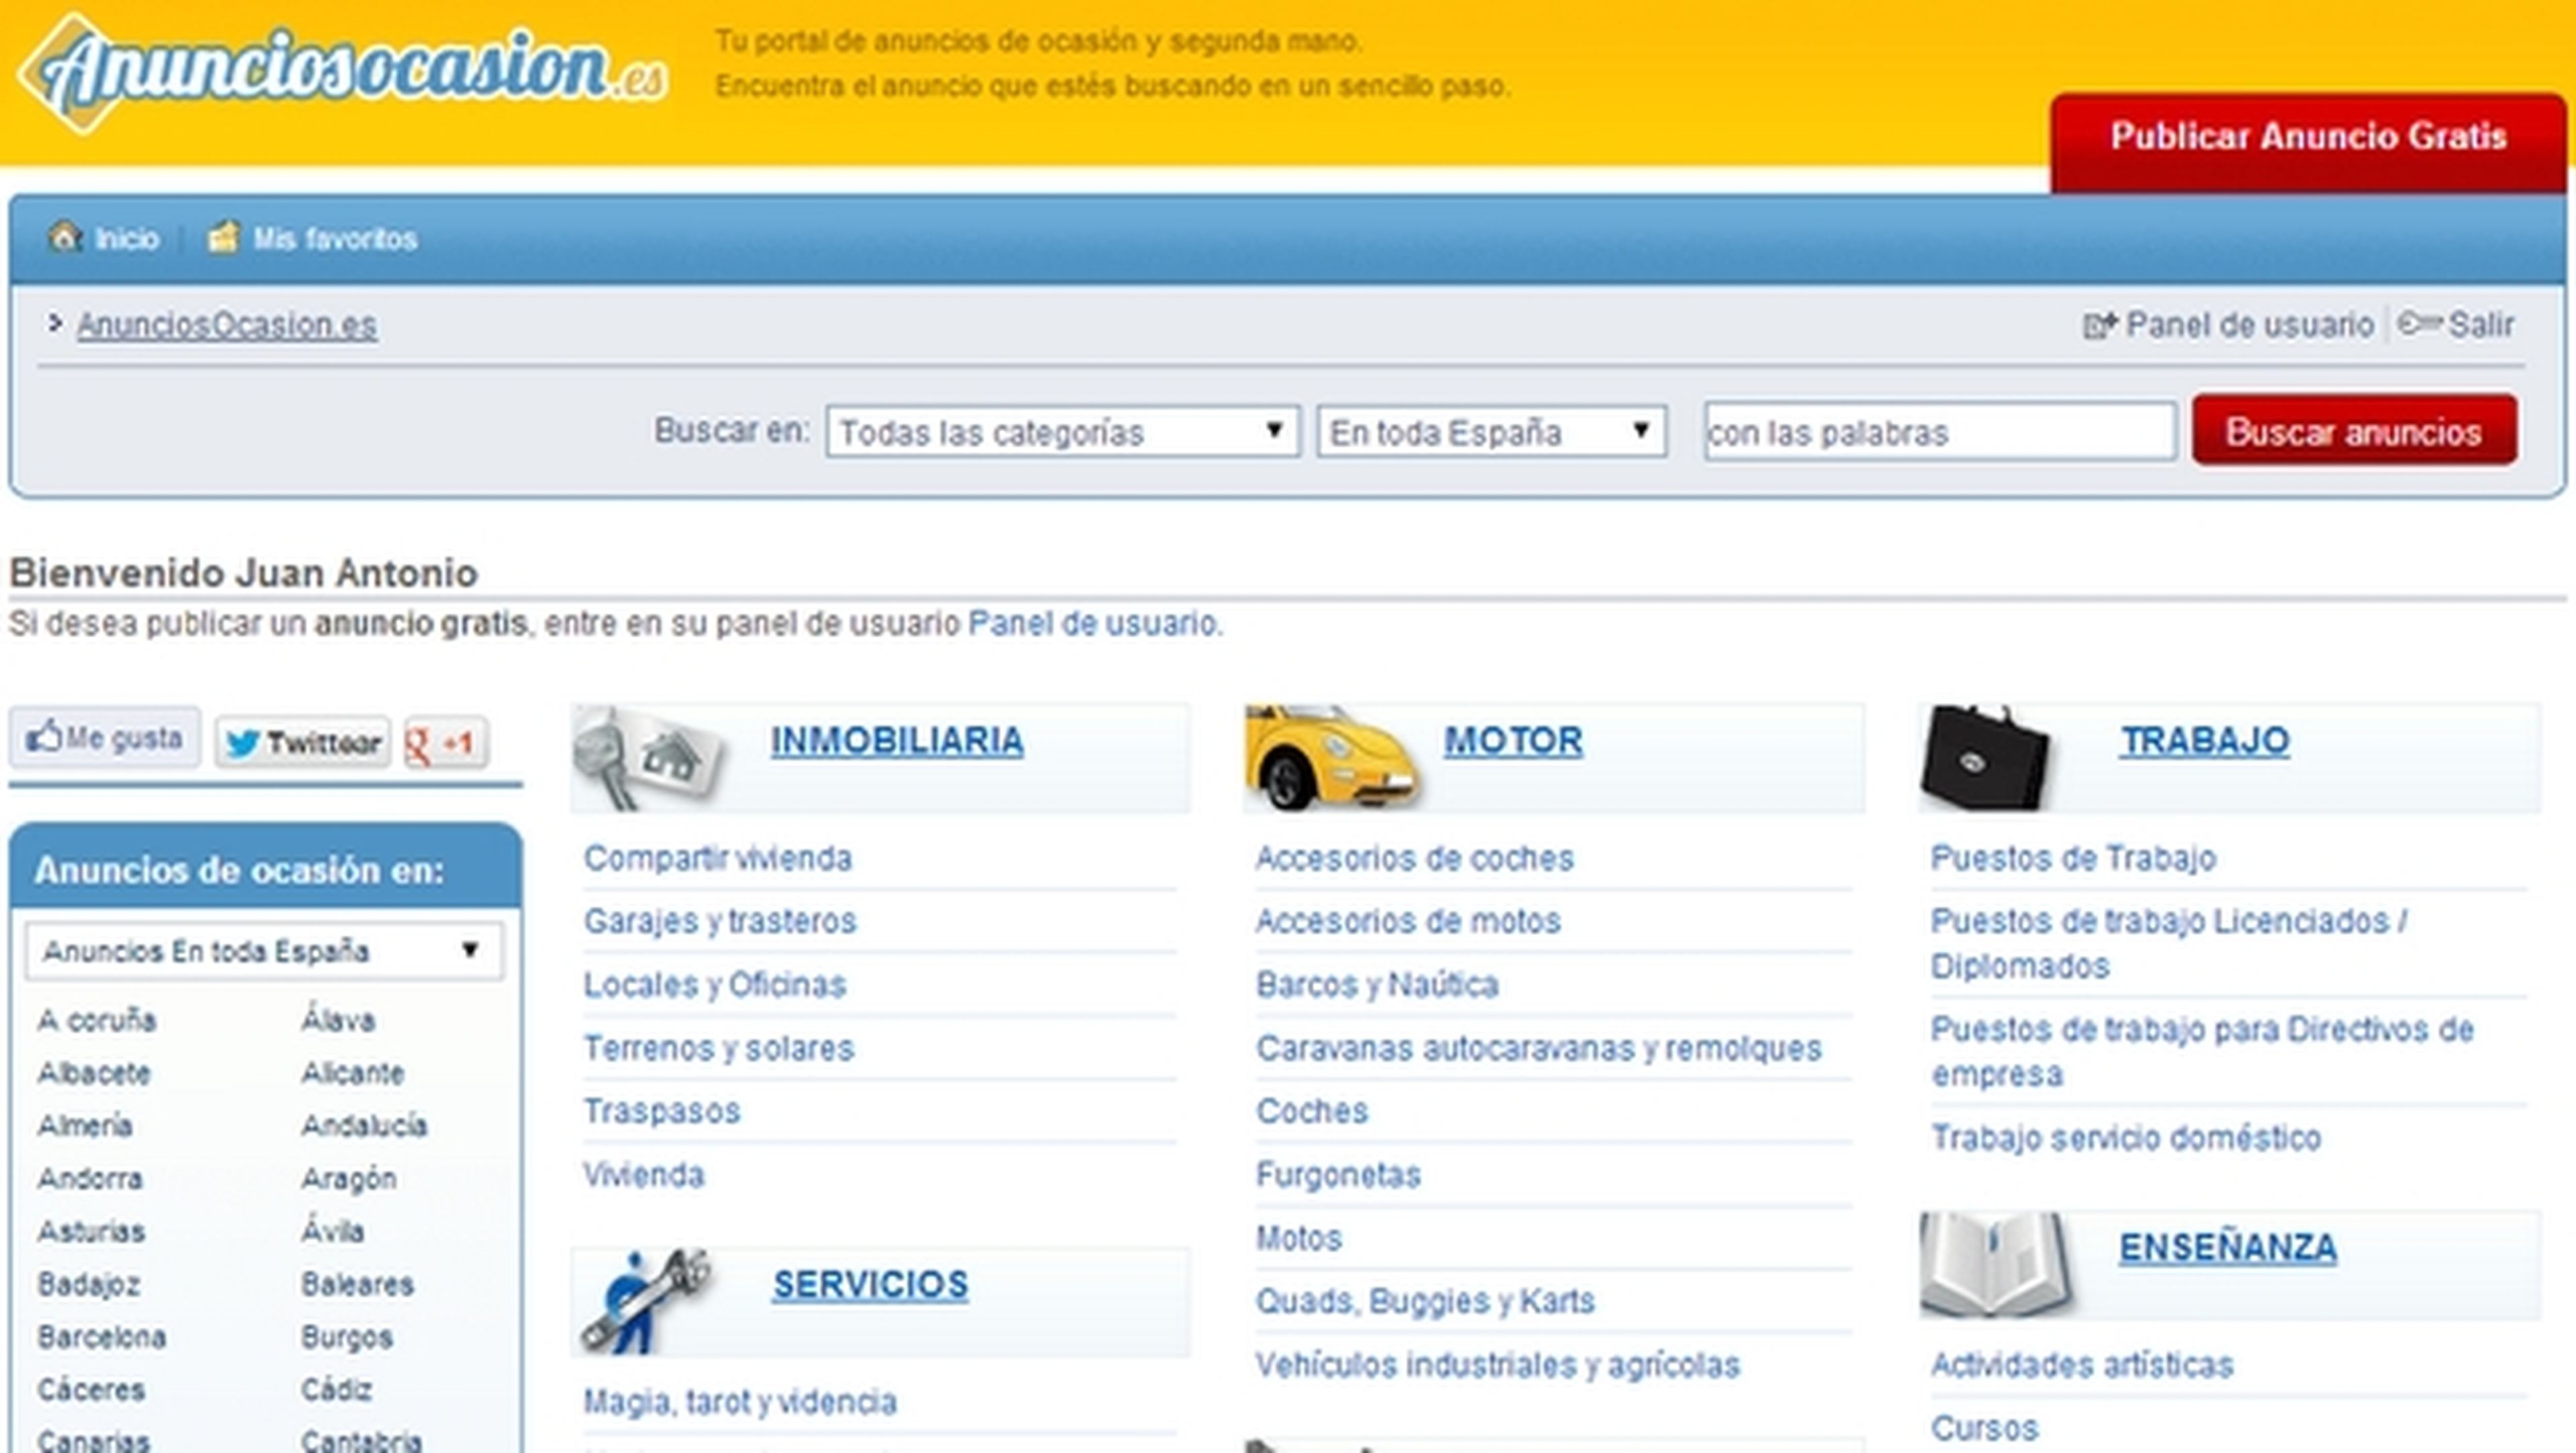 AnunciosOcasion, la alternativa española a eBay en venta de segunda mano y anuncios de ocasión.